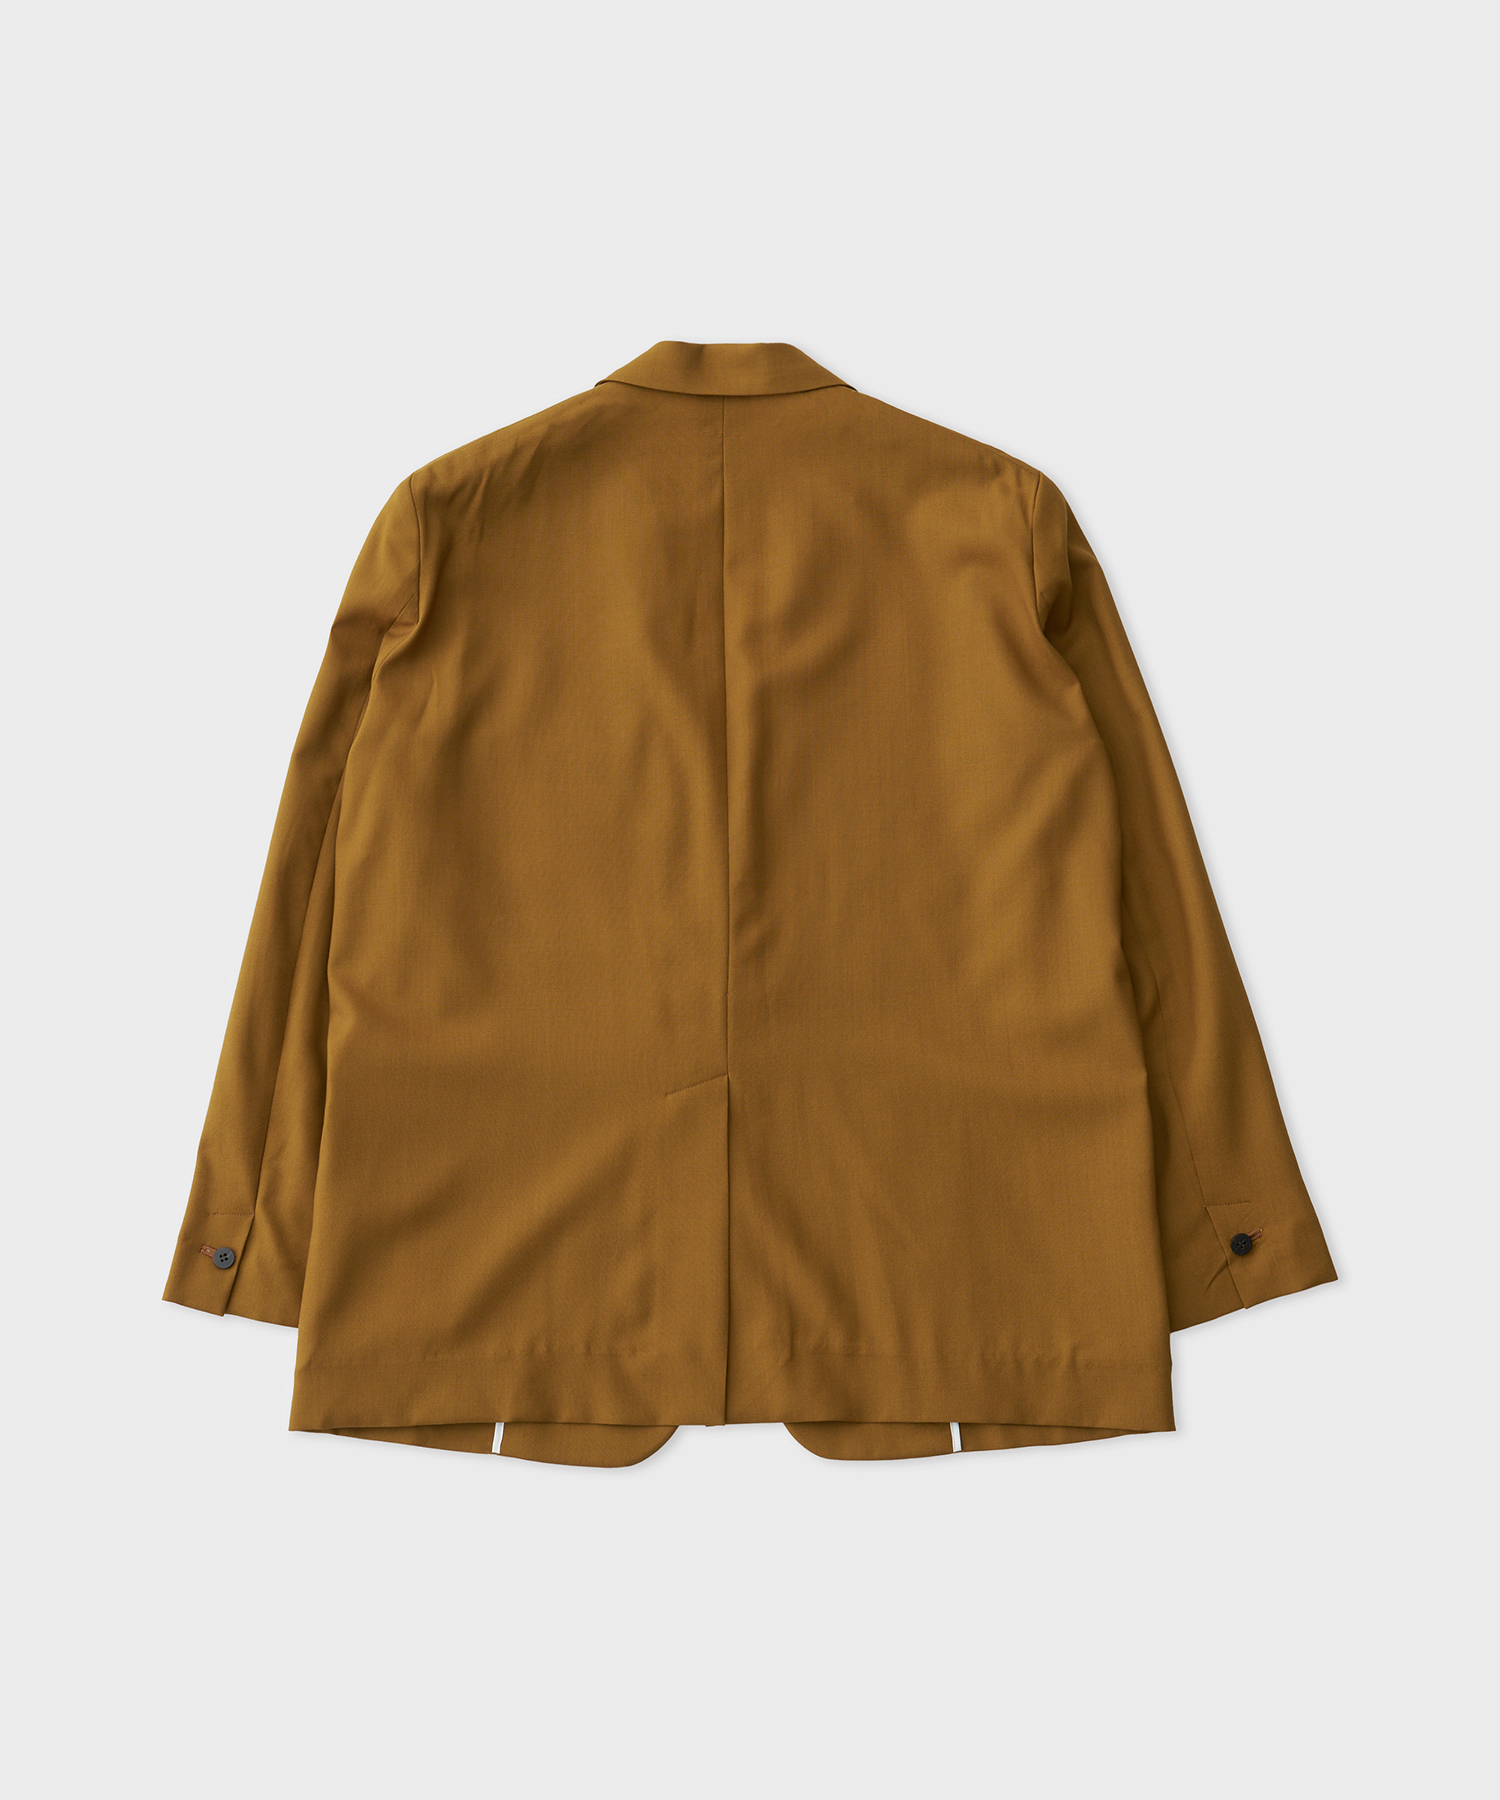 Dropped Shoulder Single Jacket (Gold)